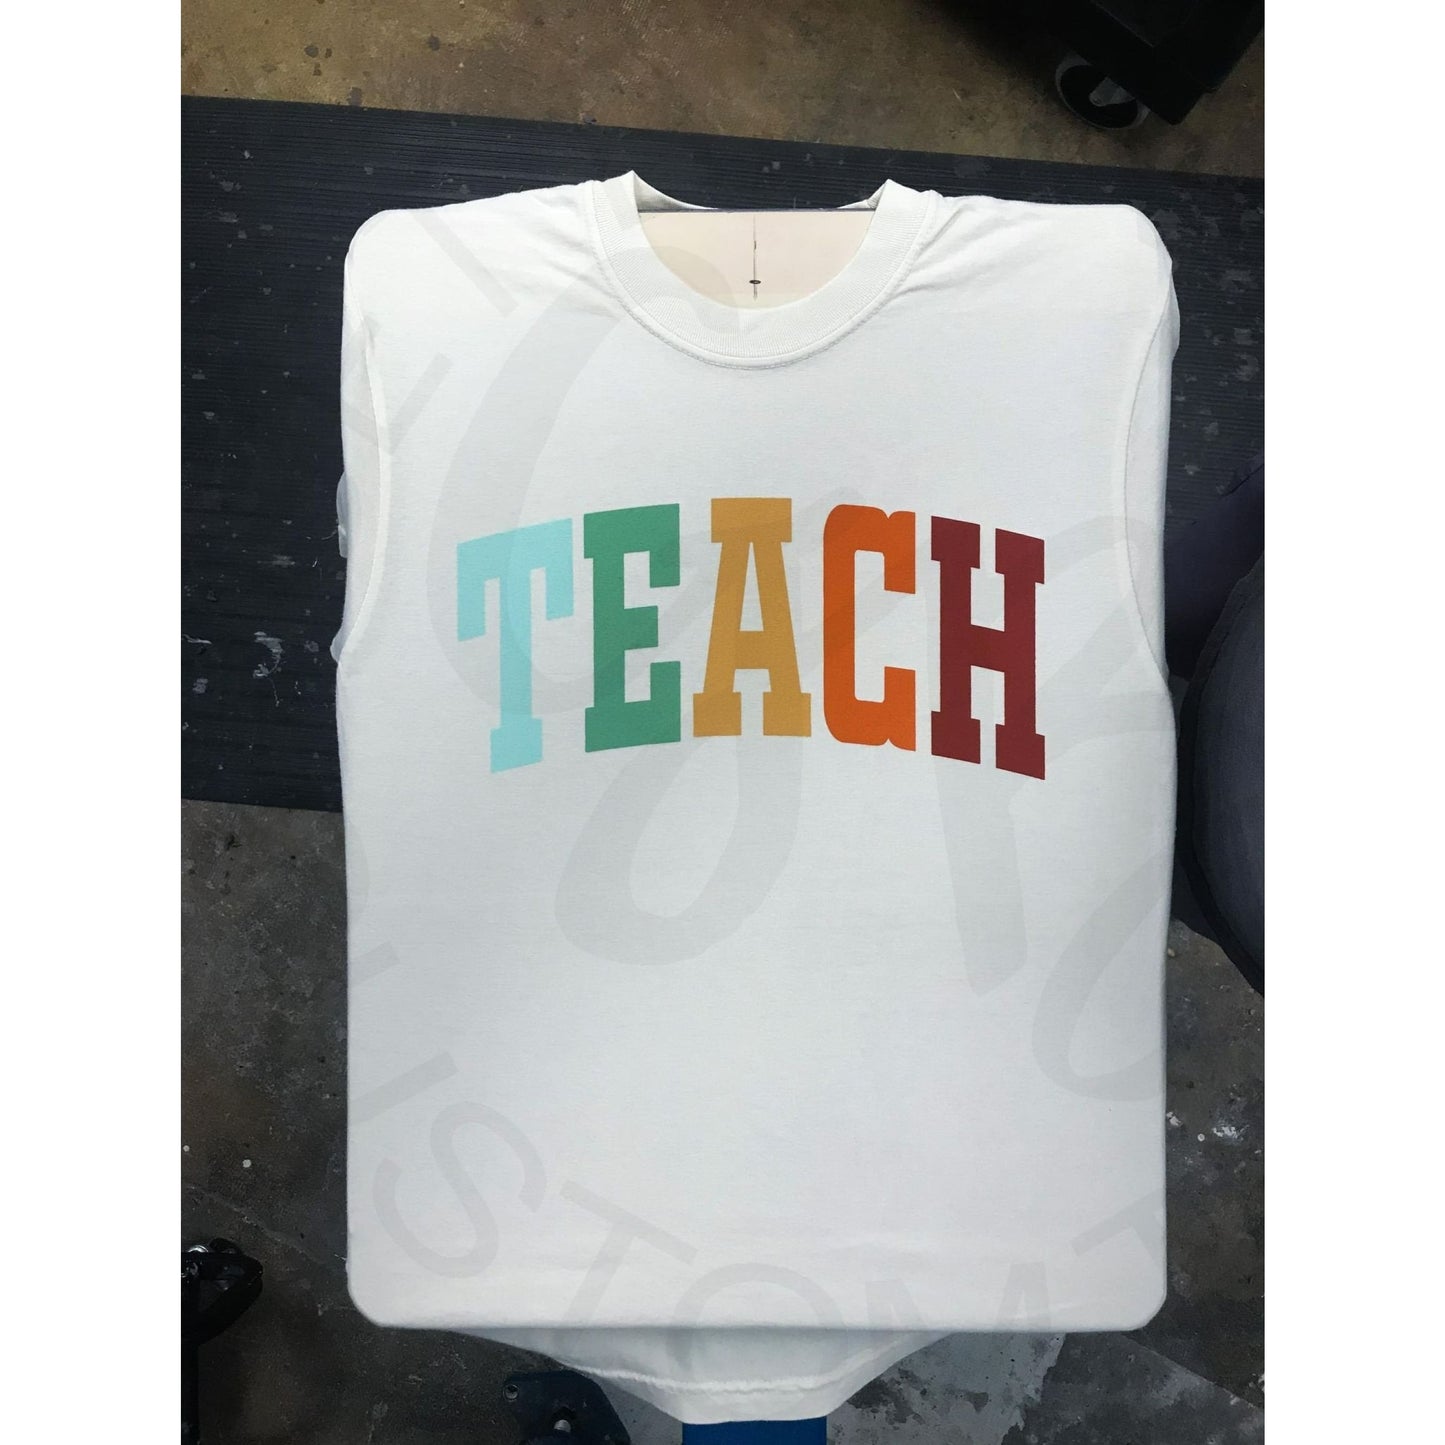 Retro Teach CC Tee